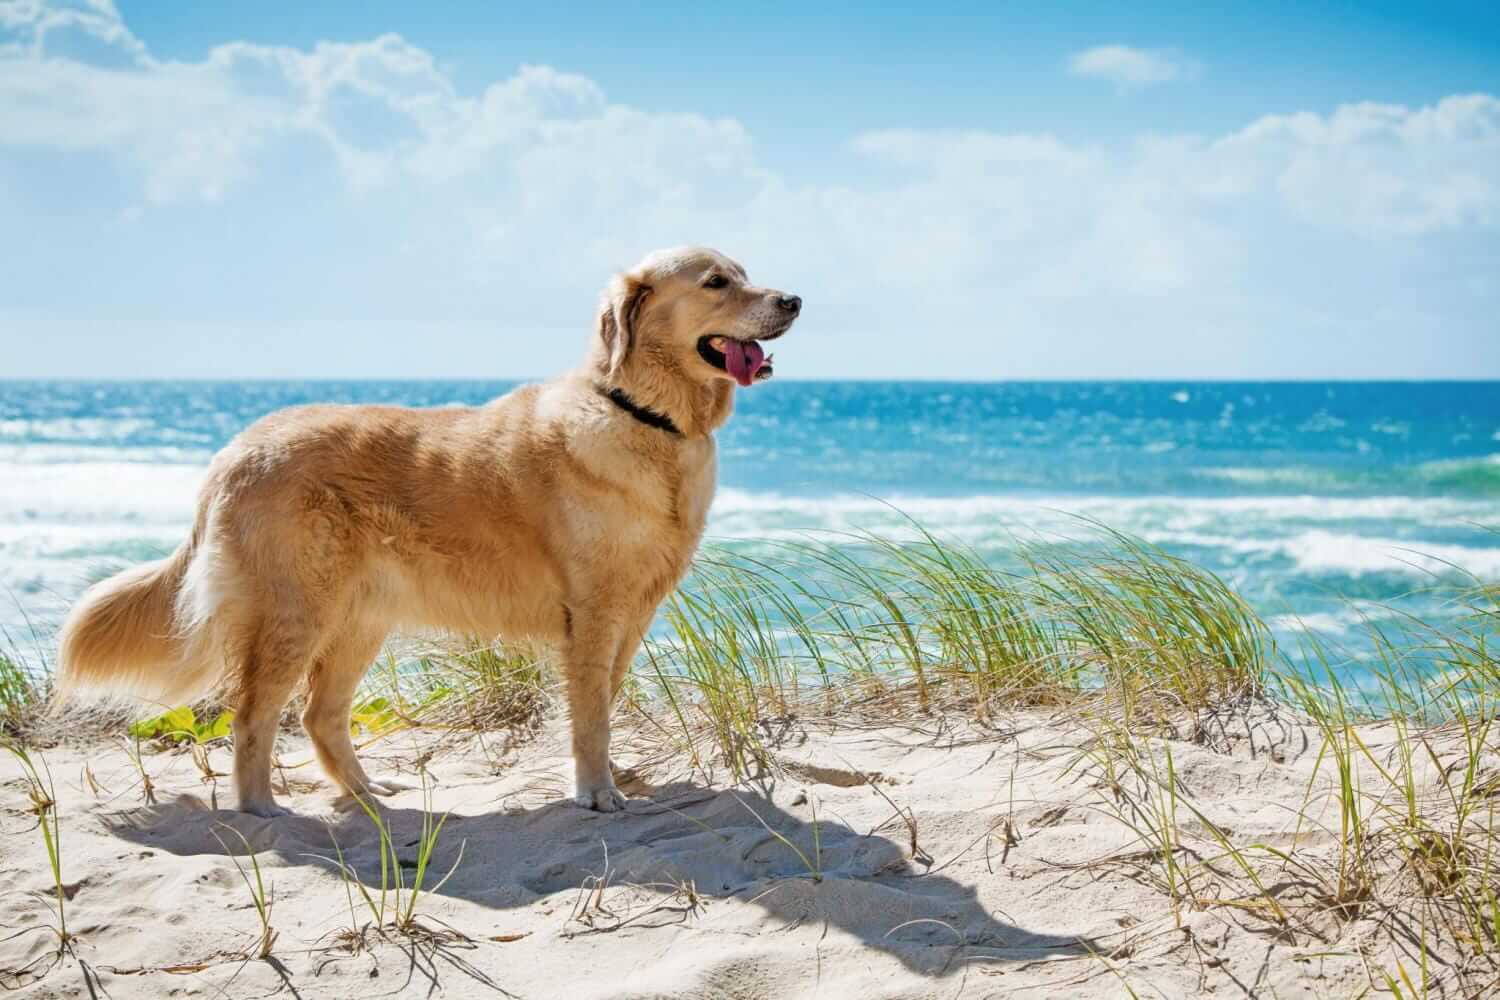  cane golden retriever sulla spiaggia